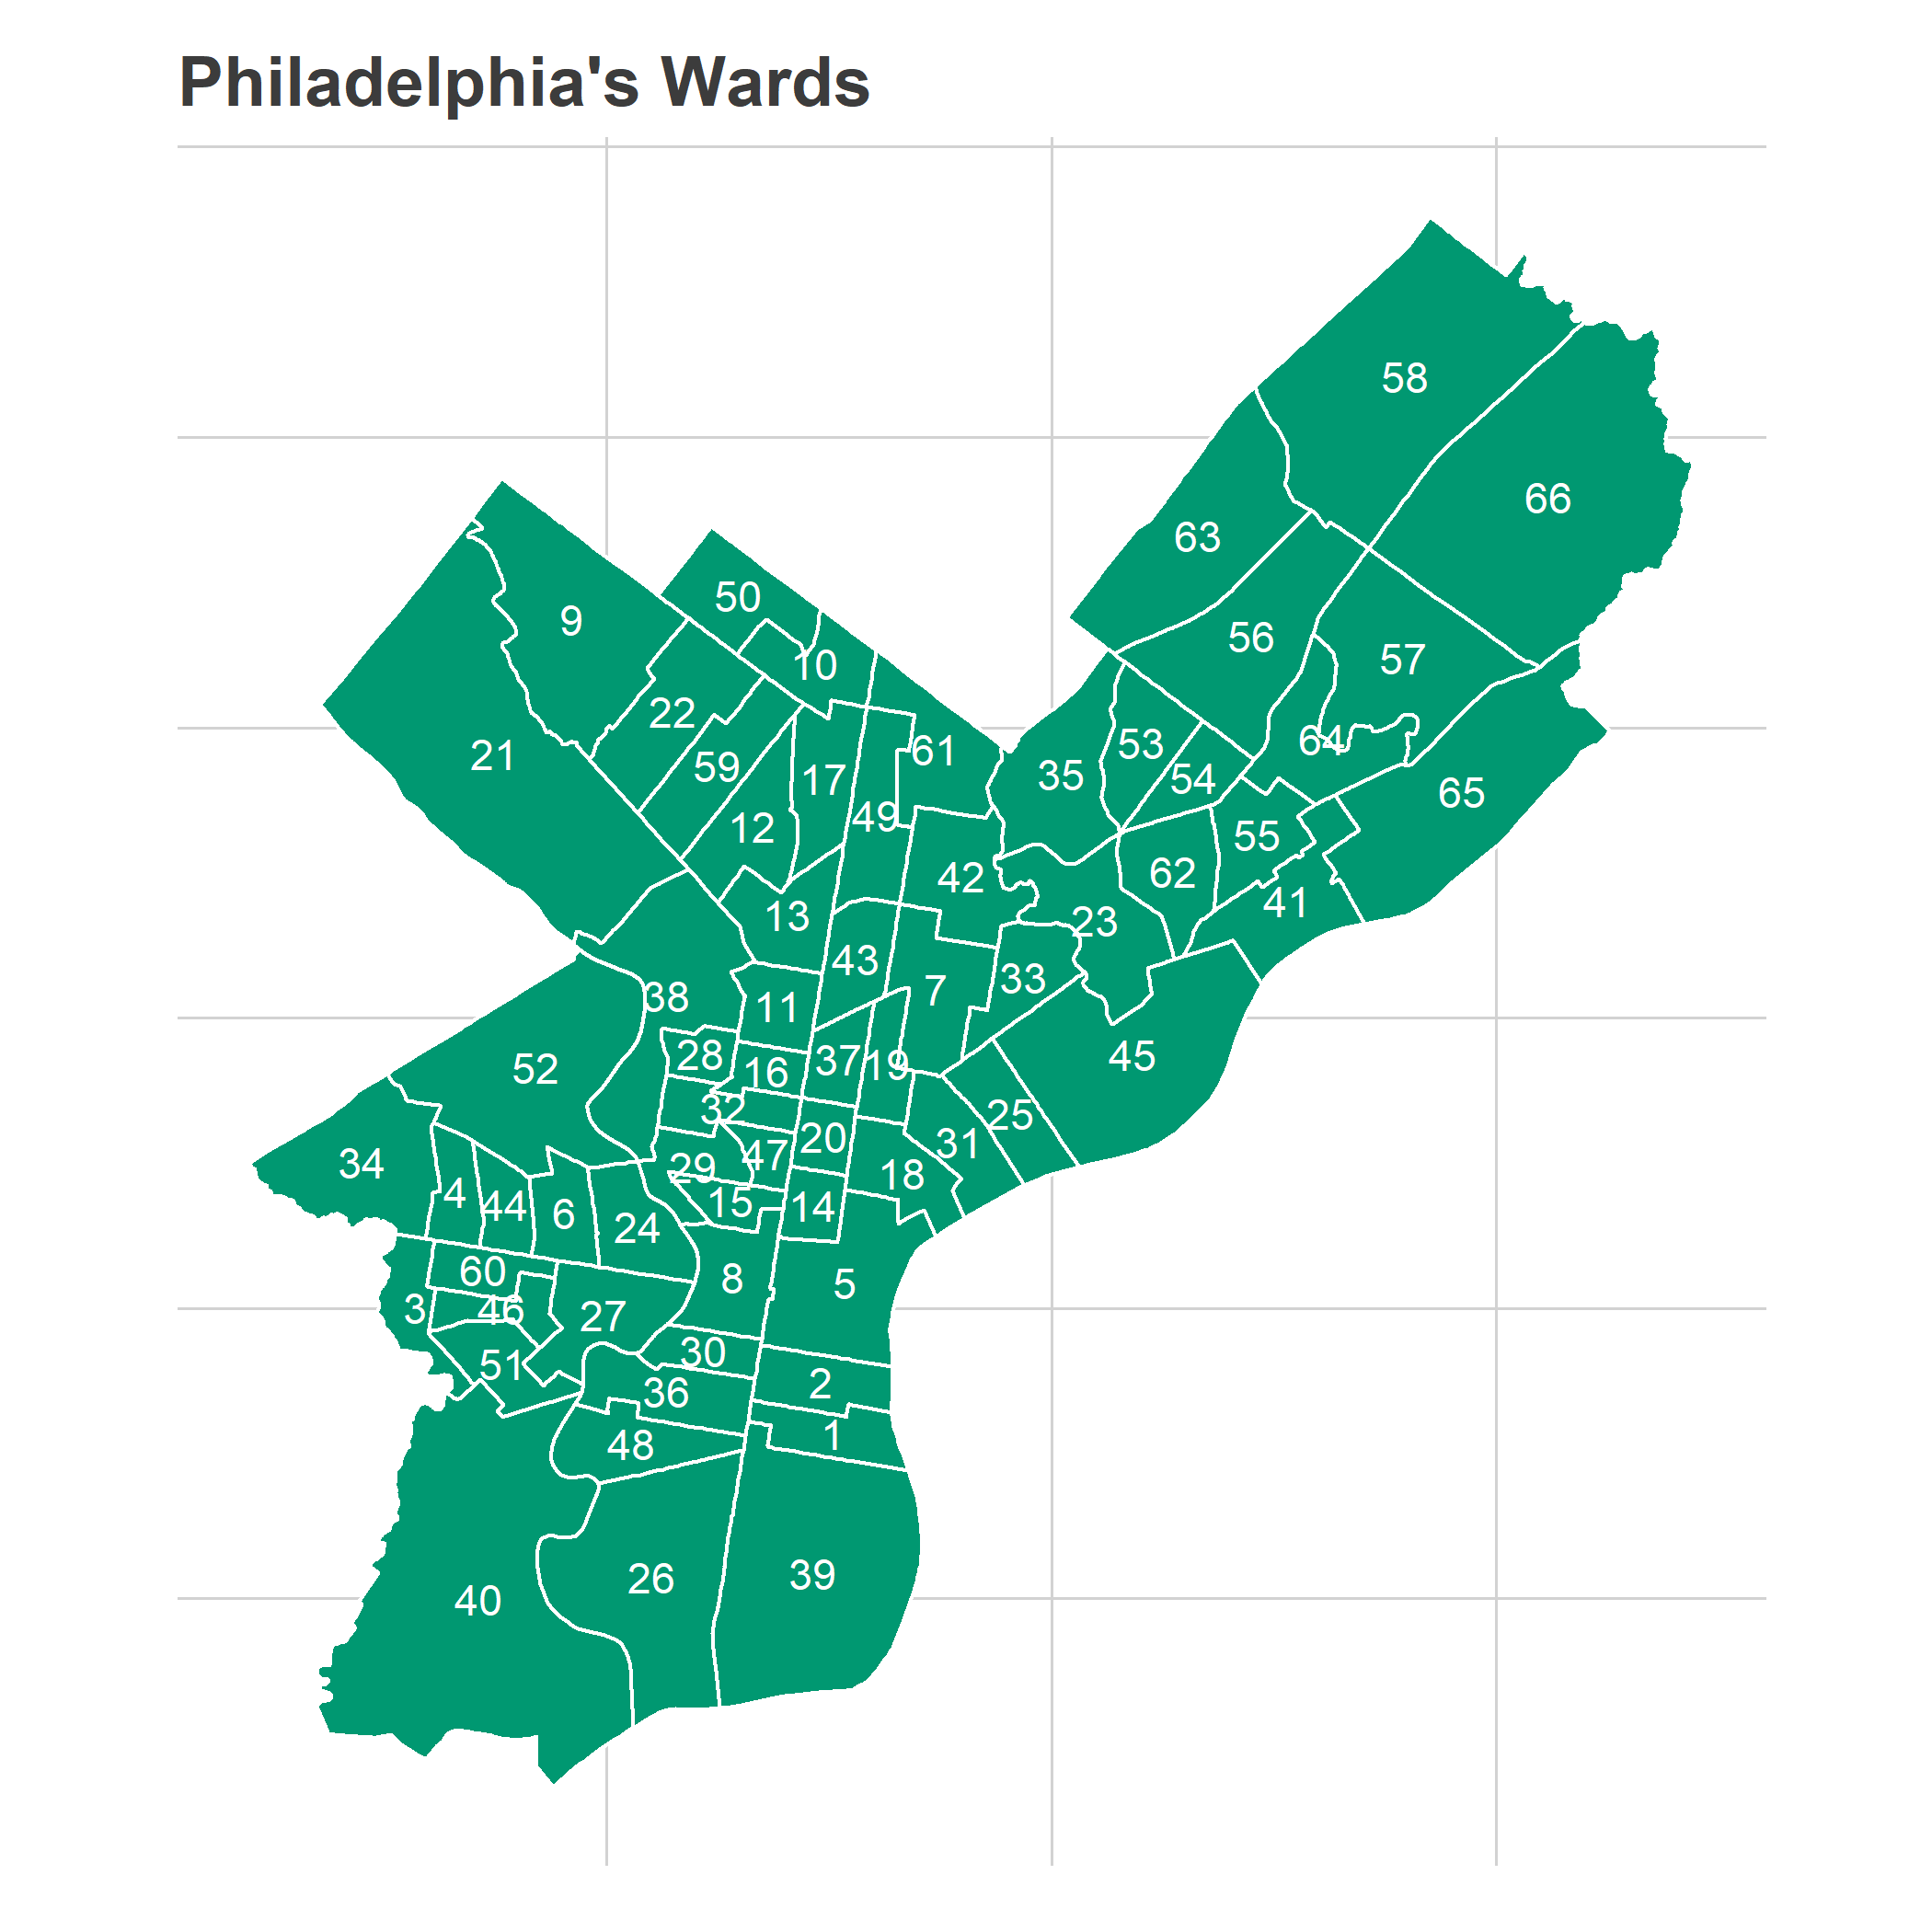 plot of chunk ward_map